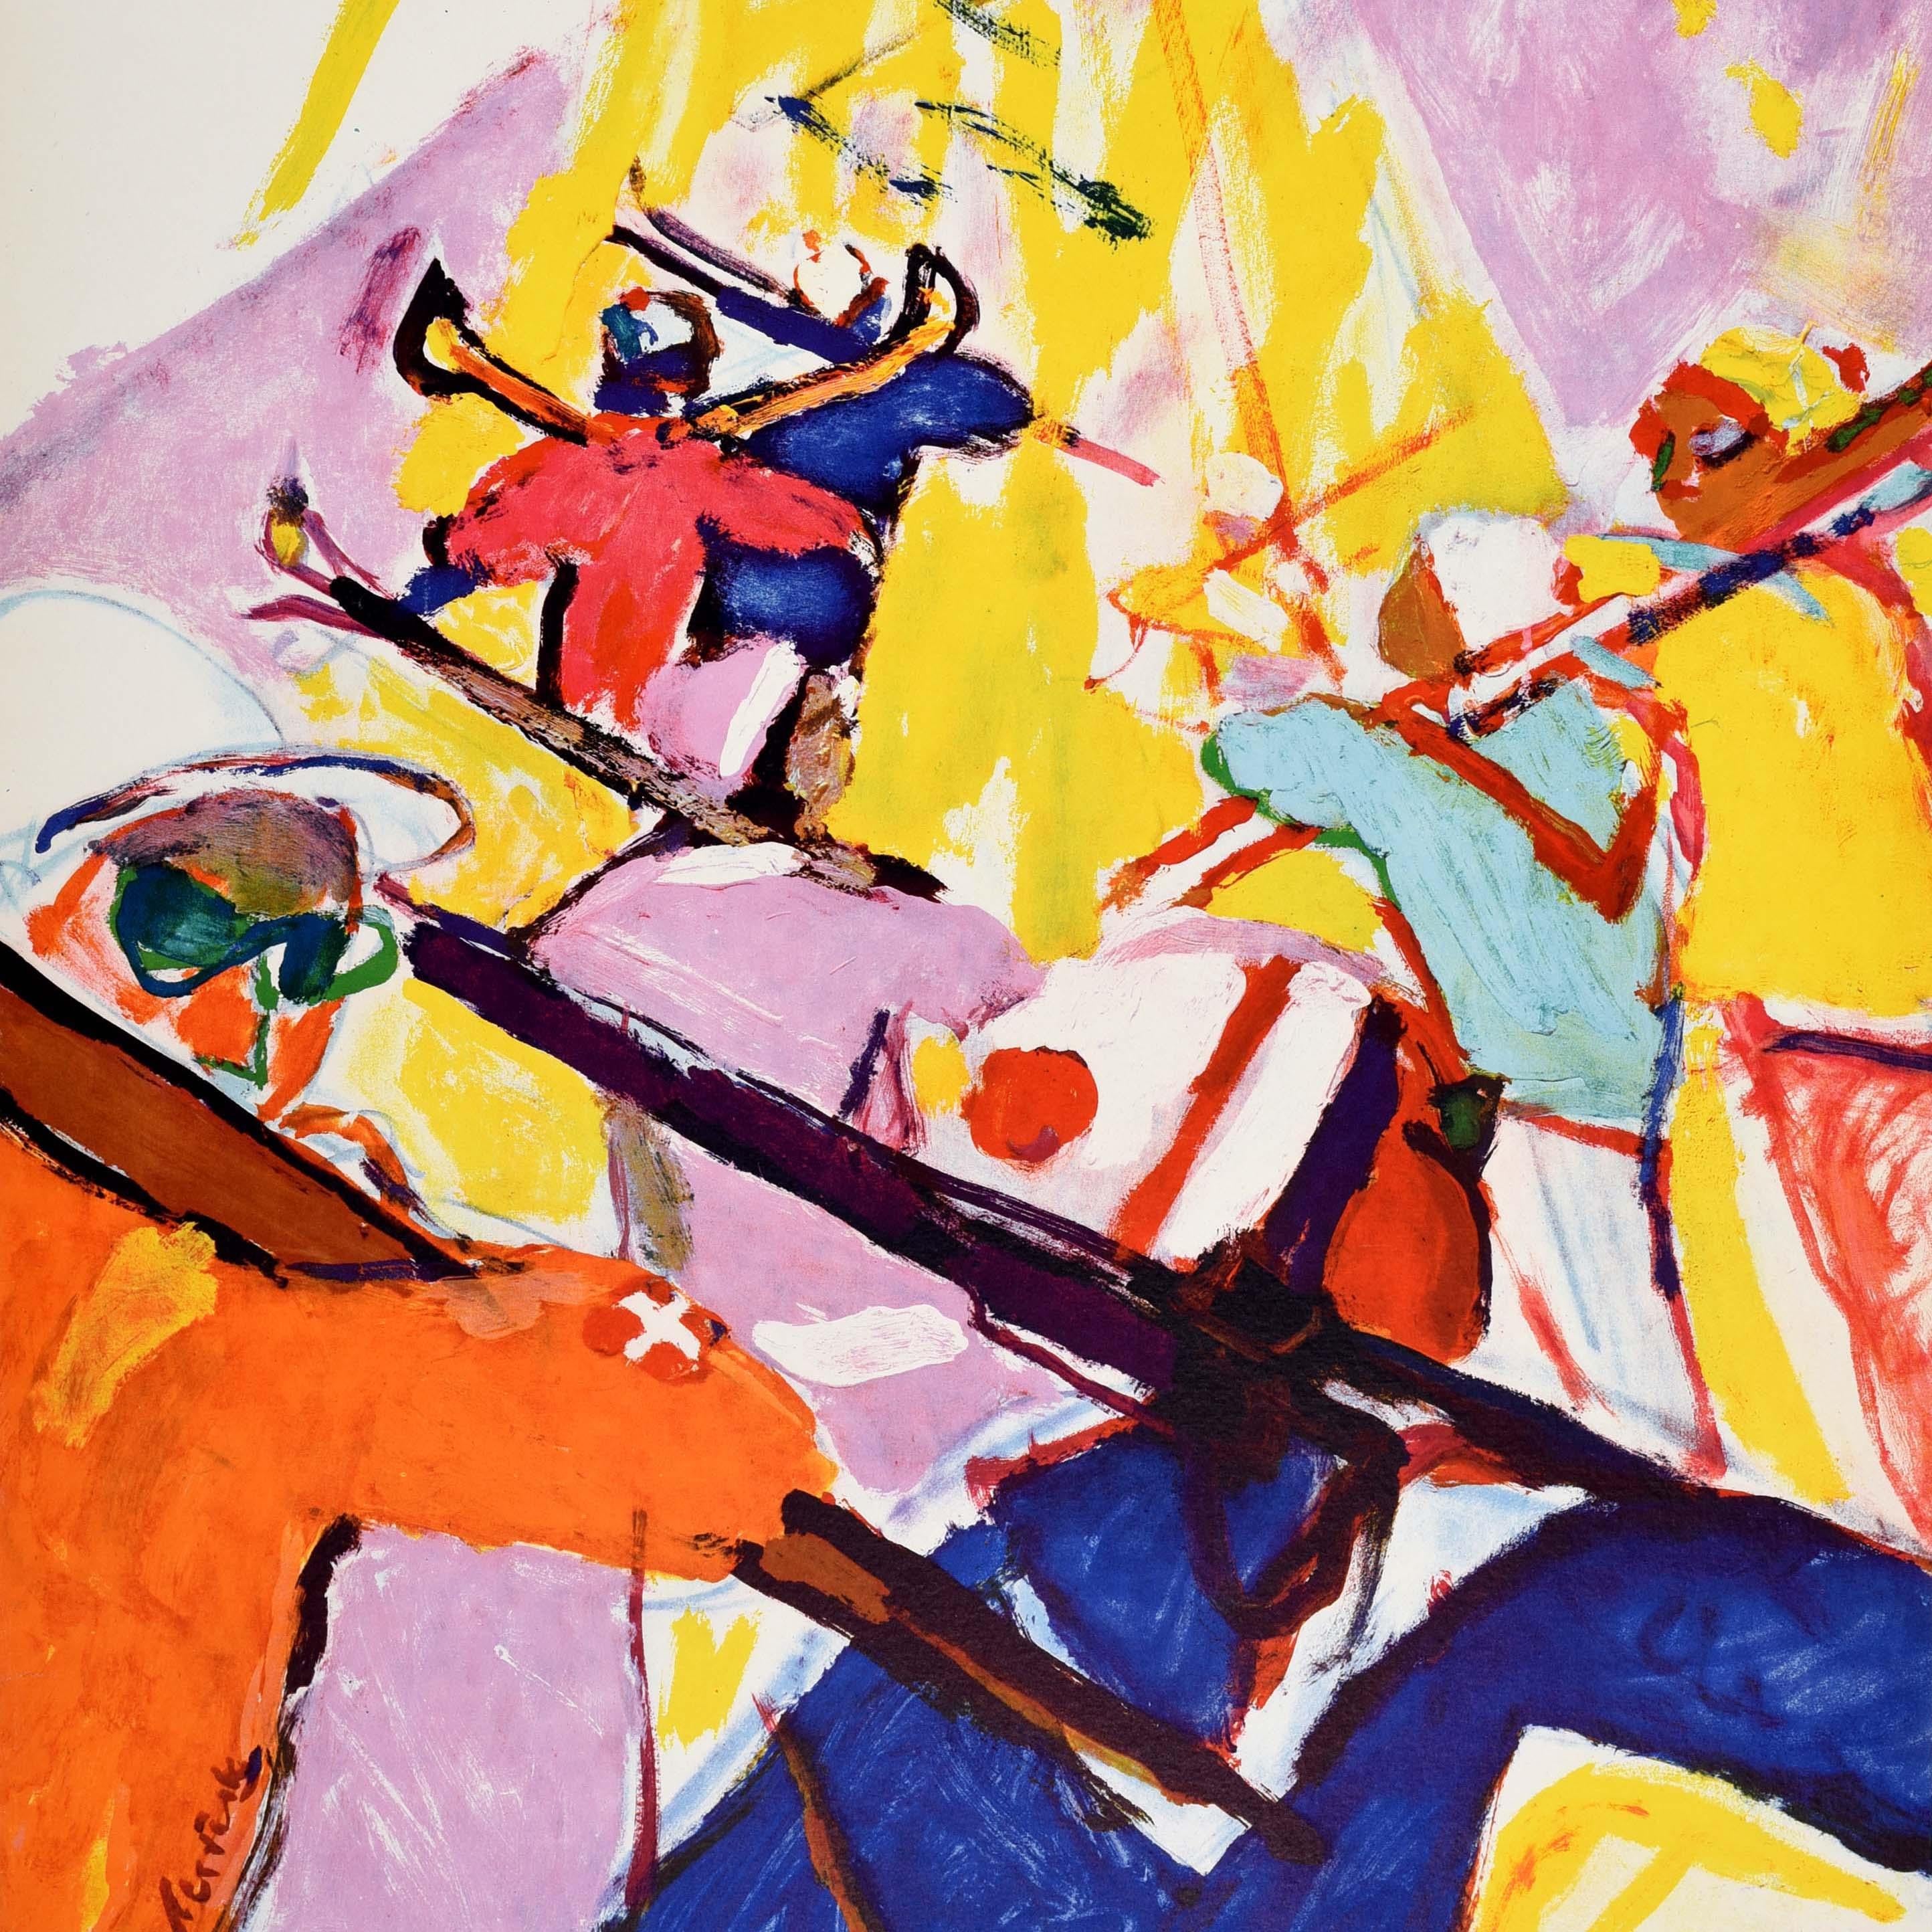 Original-Wintersport- und Skiplakat - Sport Au Soleil En Suisse / Sport In The Sun In Switzerland - mit einem farbenfrohen Kunstwerk des bekannten Künstlers Hans Falk (1918-2002), das eine Gruppe von Skifahrern zeigt, die ihre Skier beim Gehen über